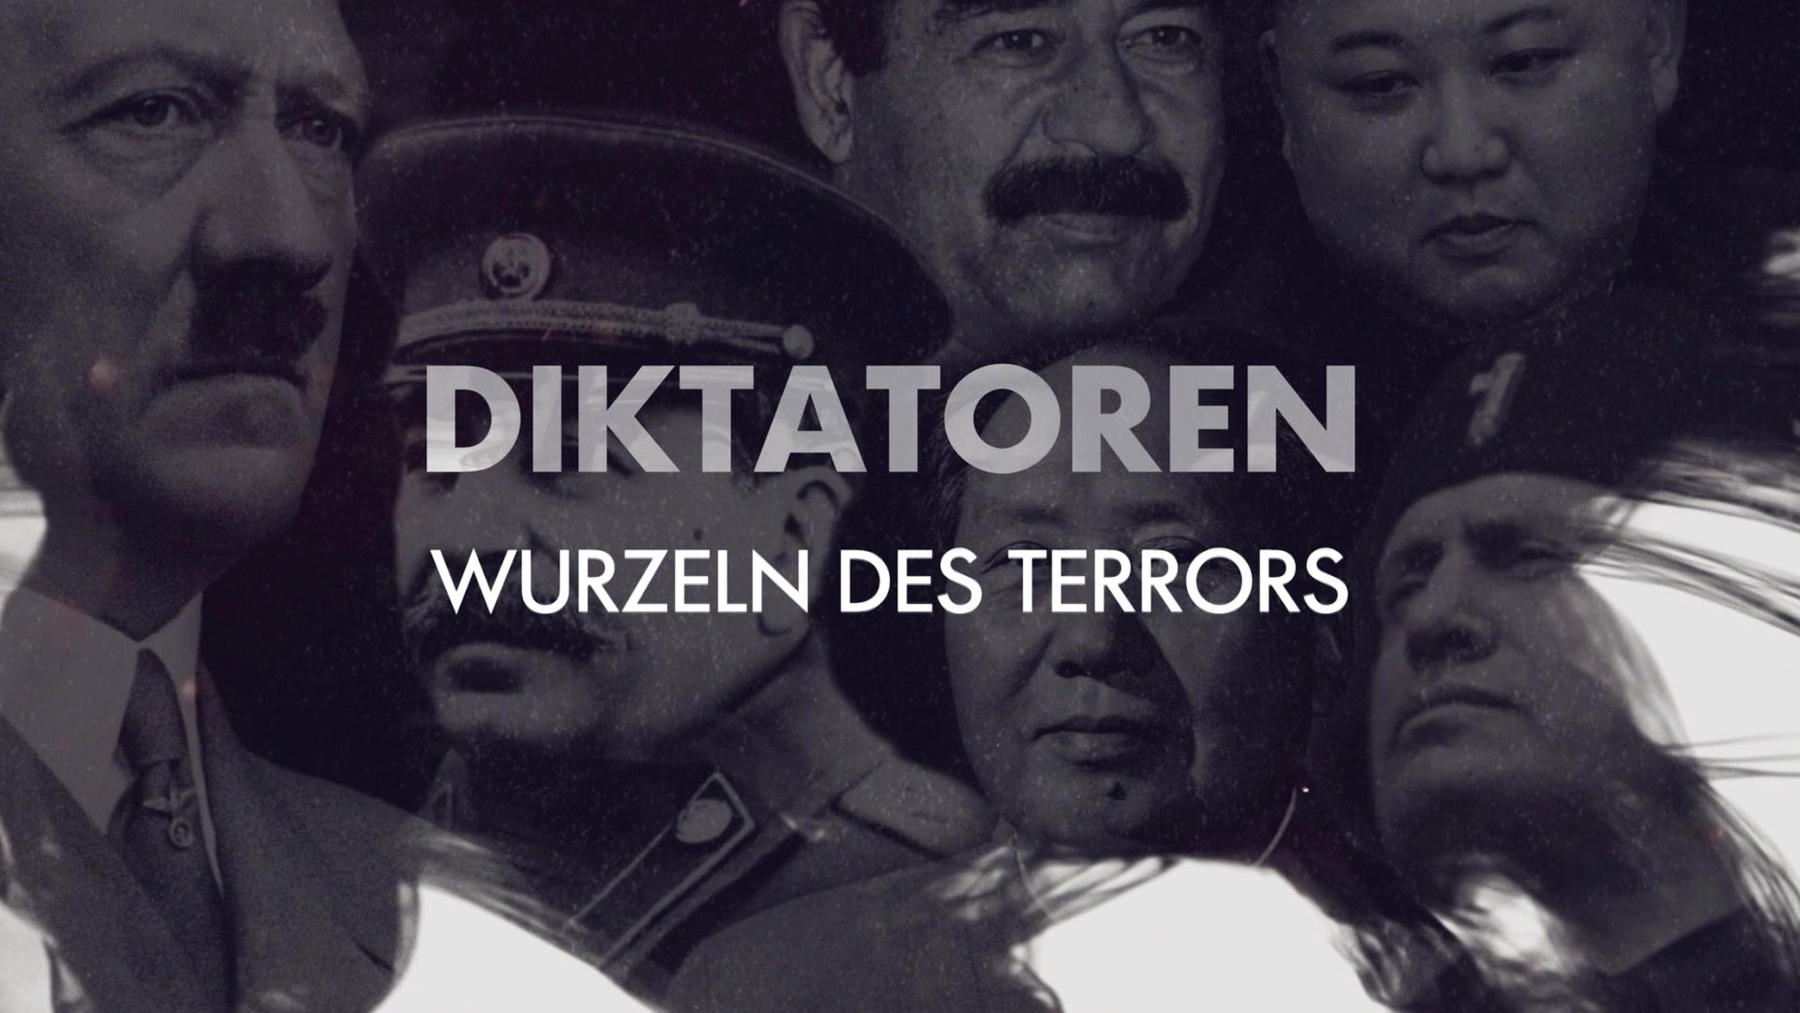 Diktatoren - Wurzeln des Terrors im Online Stream | RTL+